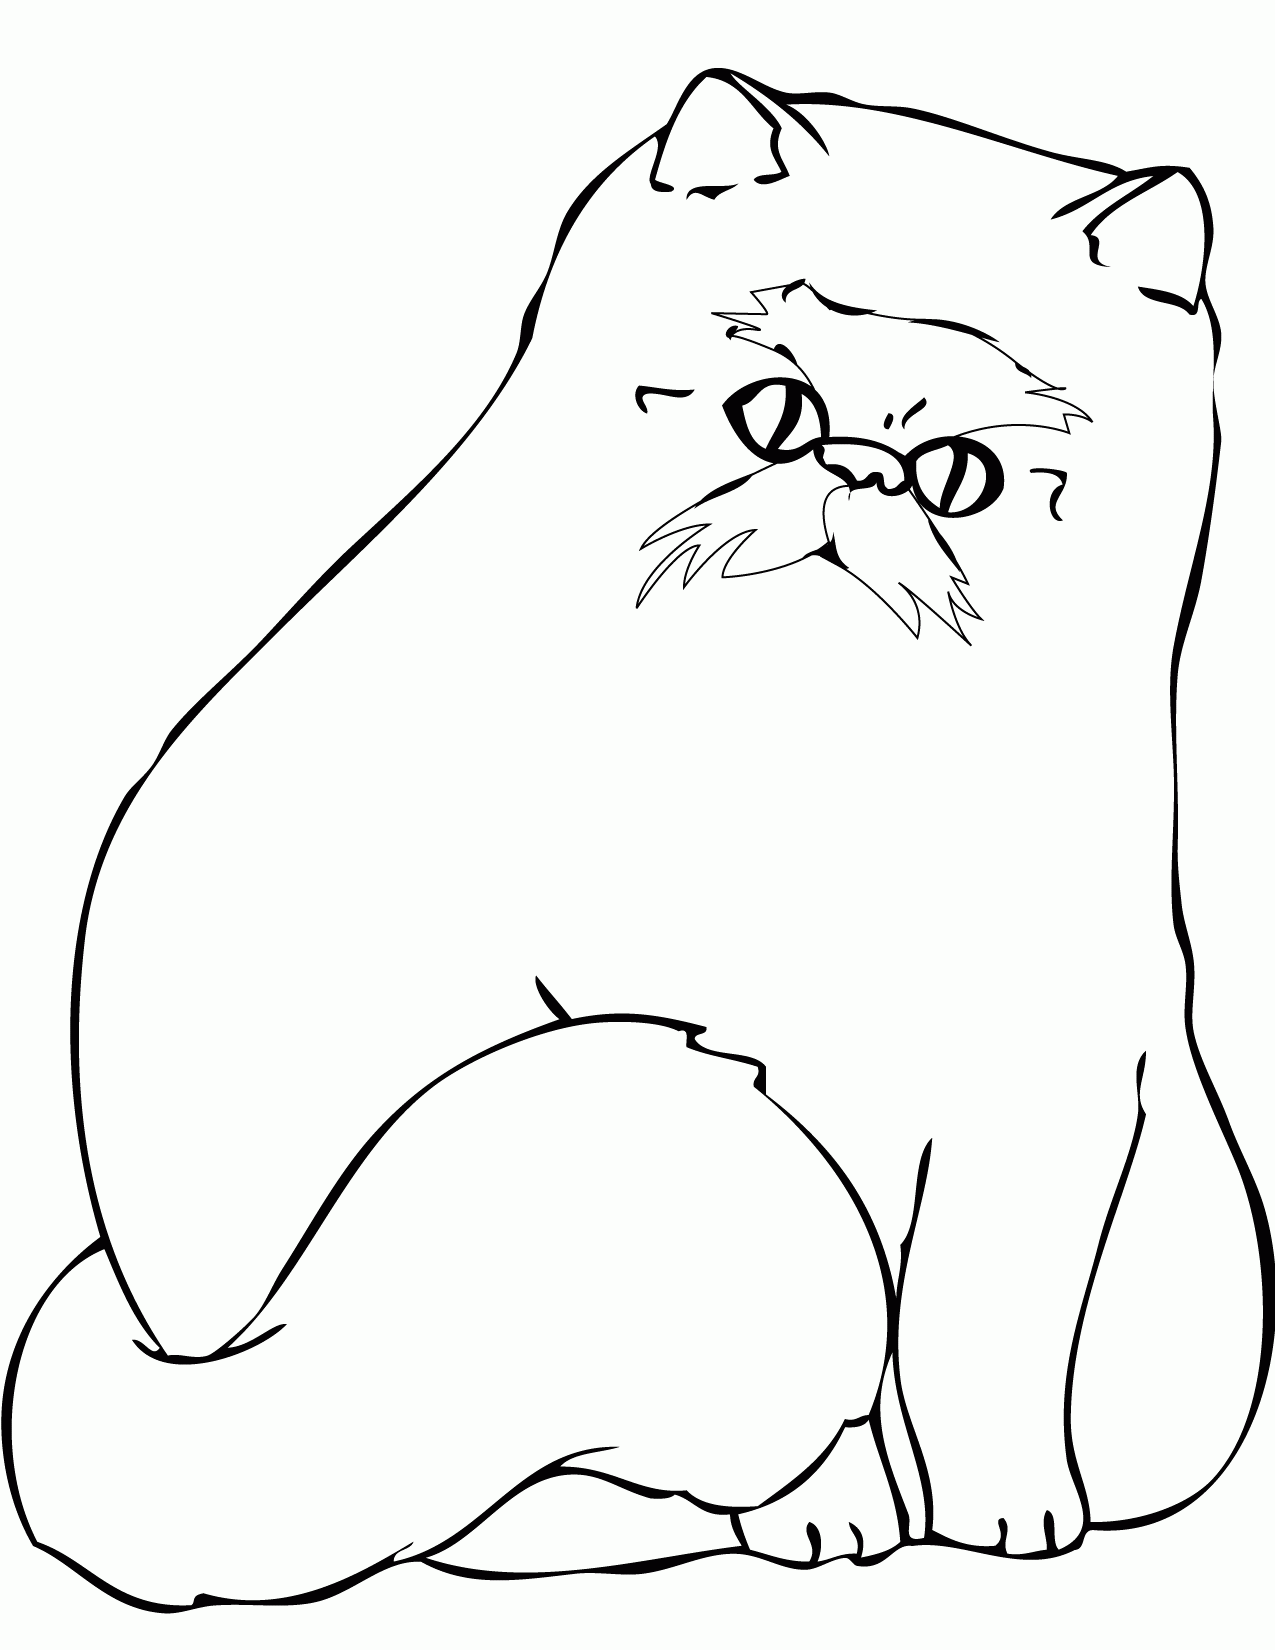 Kolorowanka kot stary z wąsami i bardzo puszysty siedzi i się patrzy